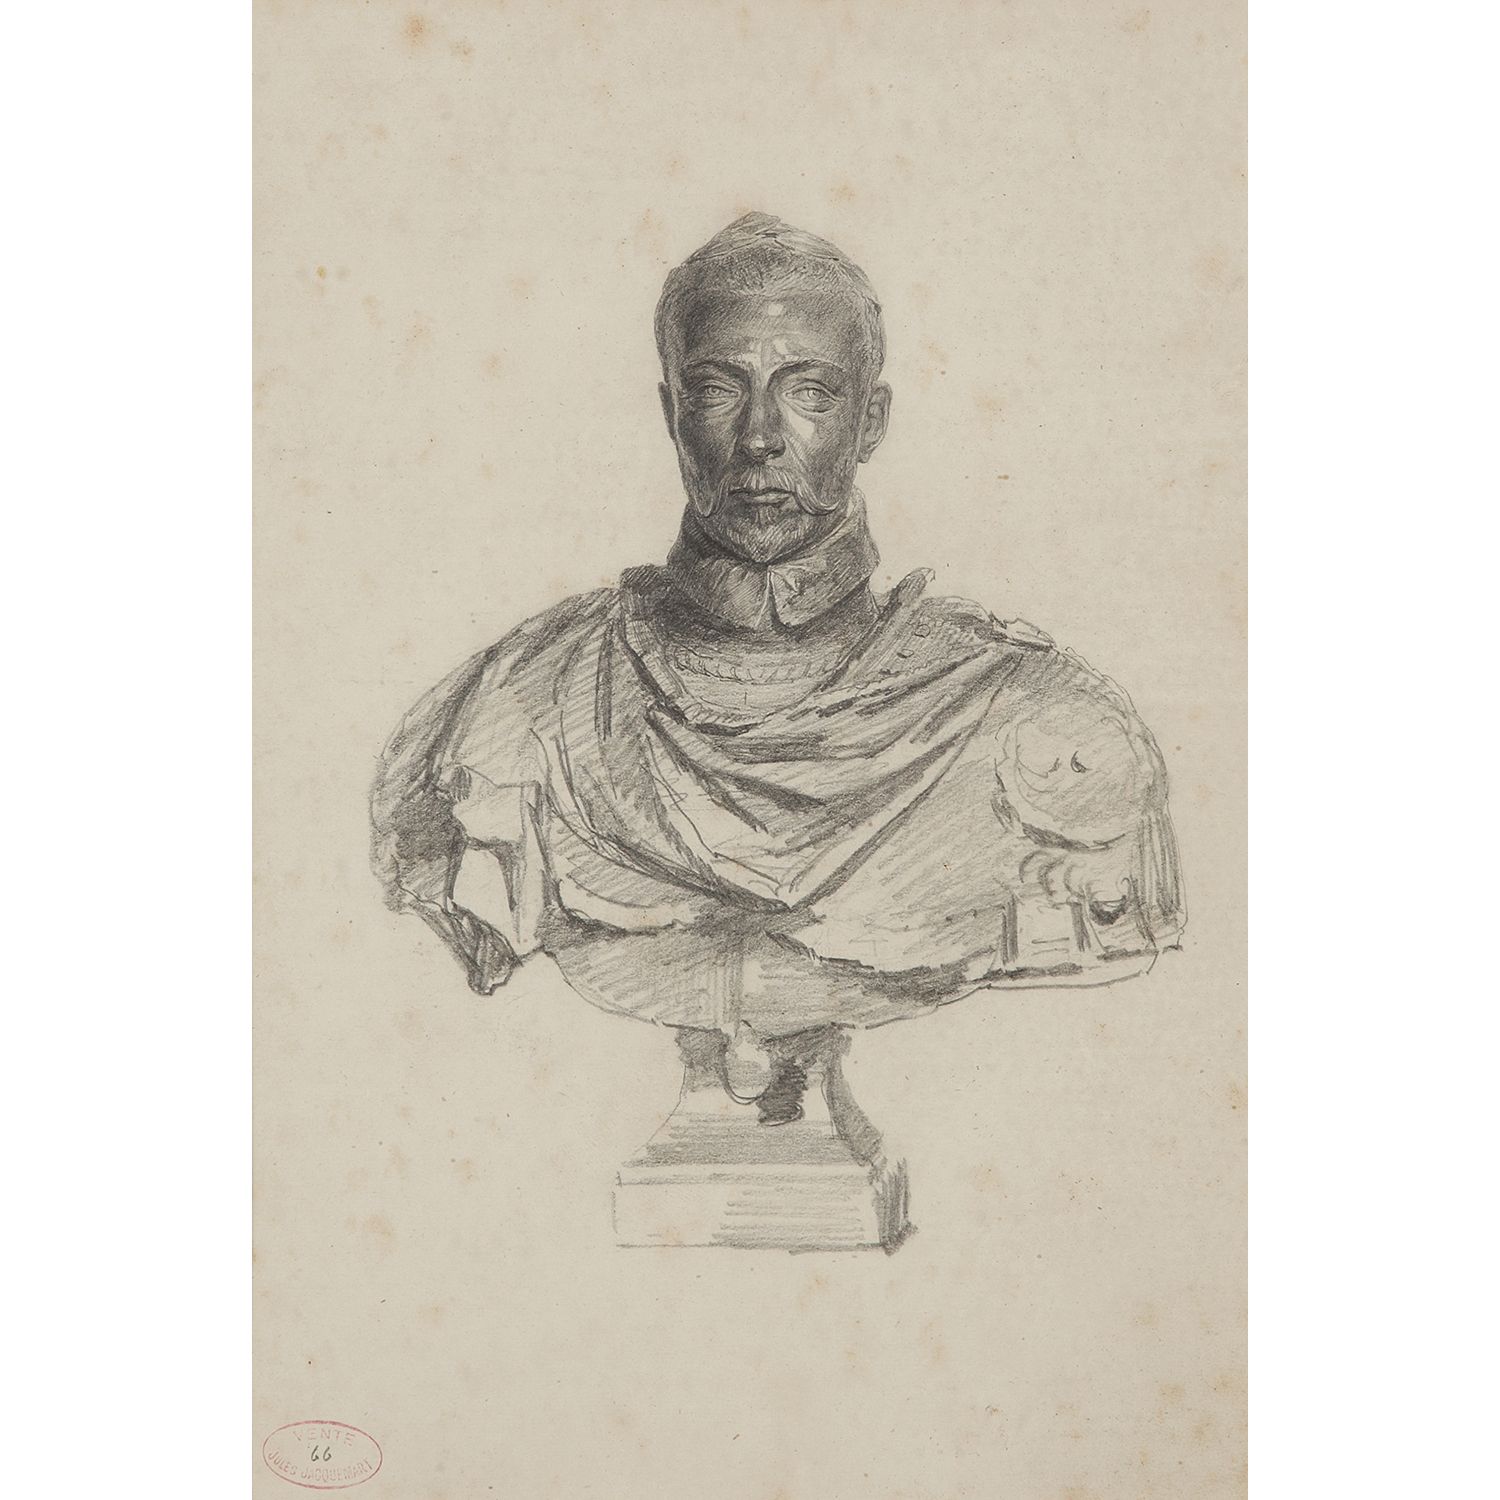 Null 朱尔-费迪南-雅克马尔 (1837 - 1880)

文艺复兴时期的半身雕像研究

黑色铅笔

左下角有雅克马尔拍卖会的印记，编号为66（L.1395&hellip;